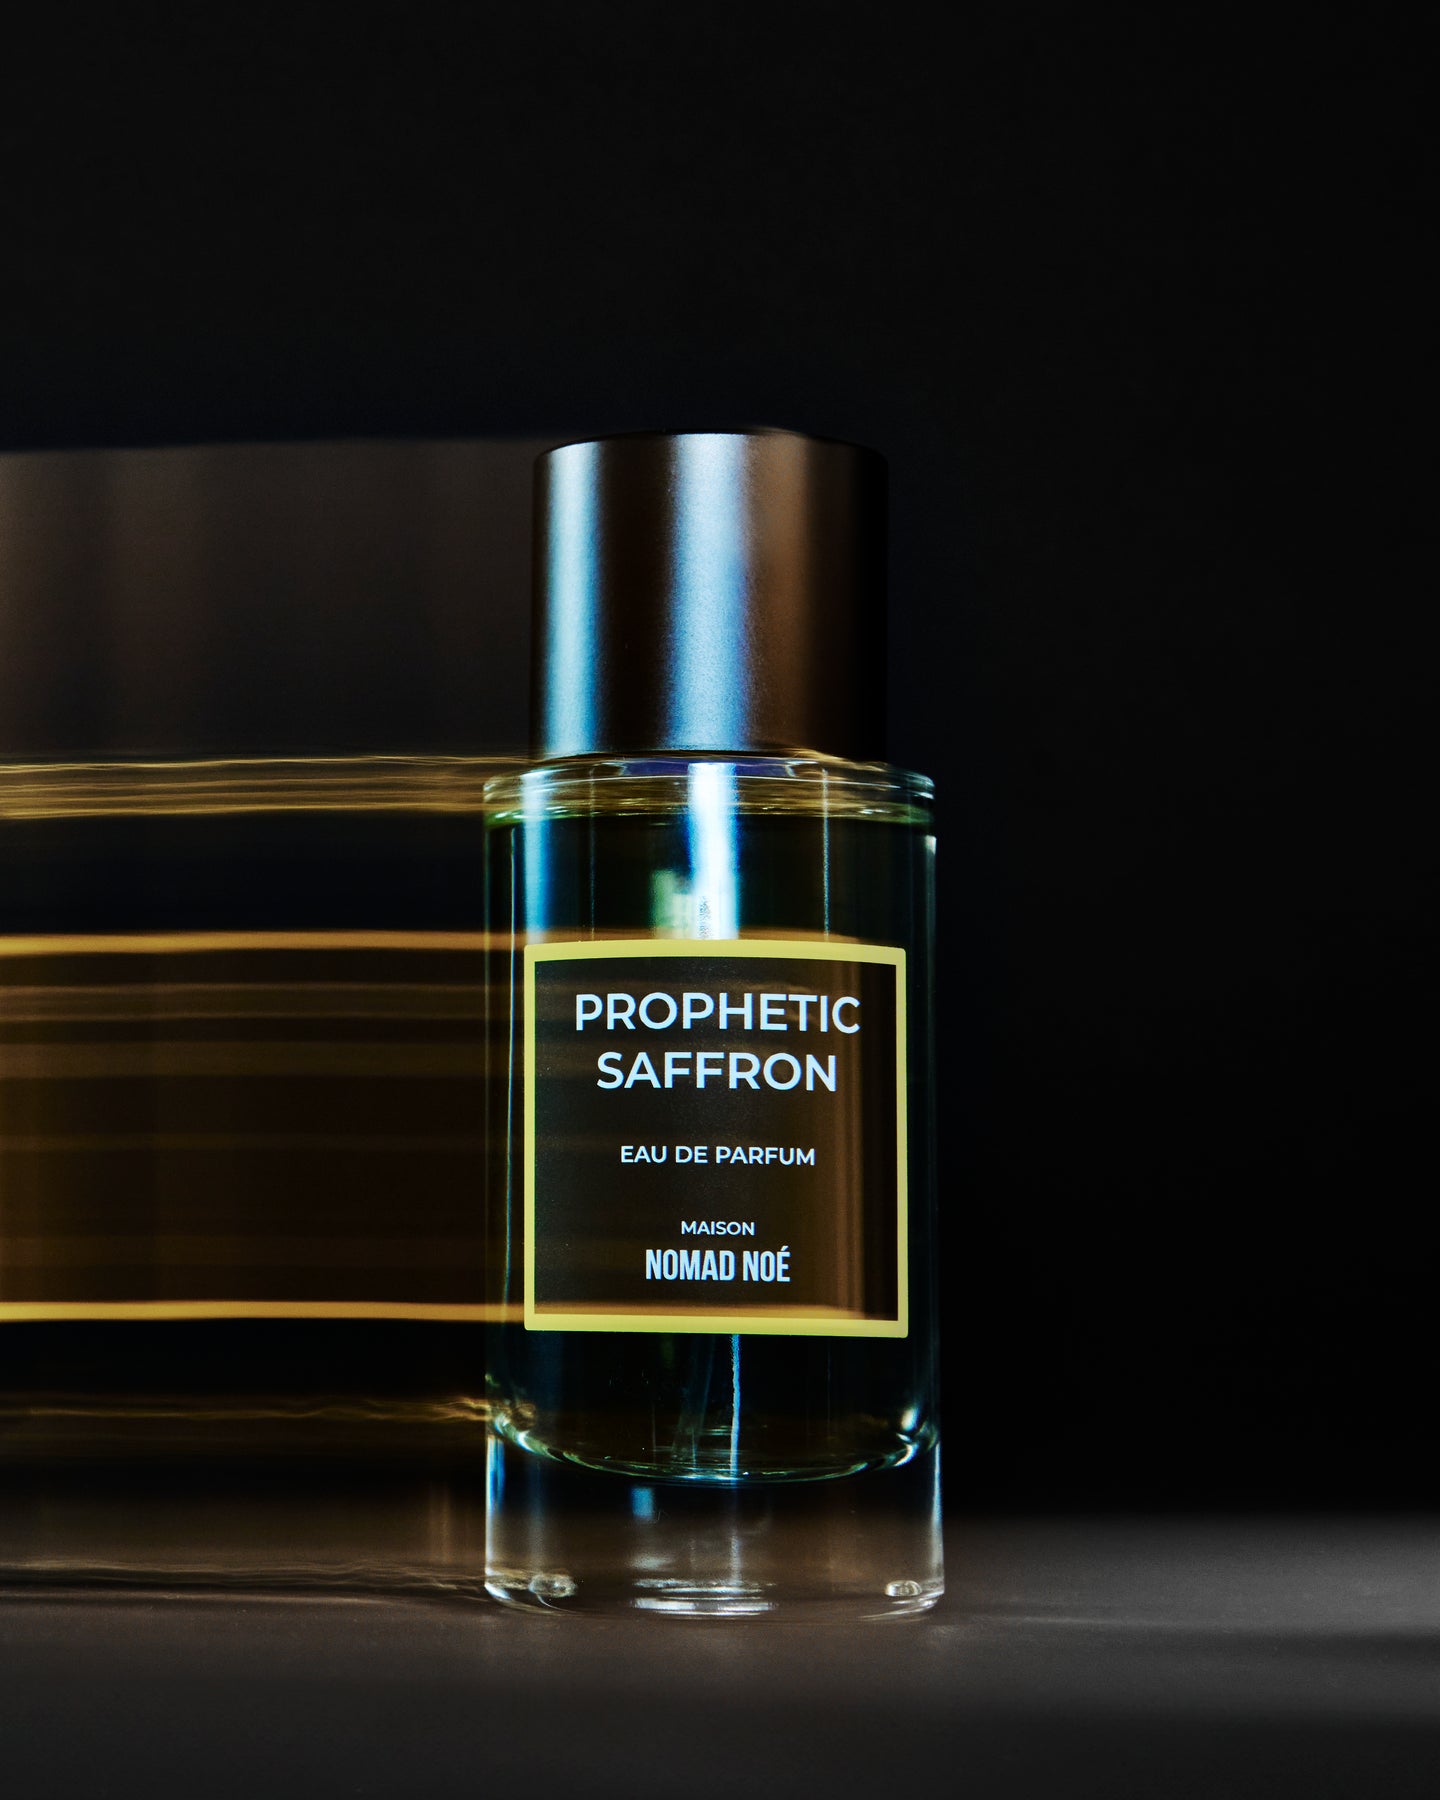 Prophetic Saffron perfume bottle